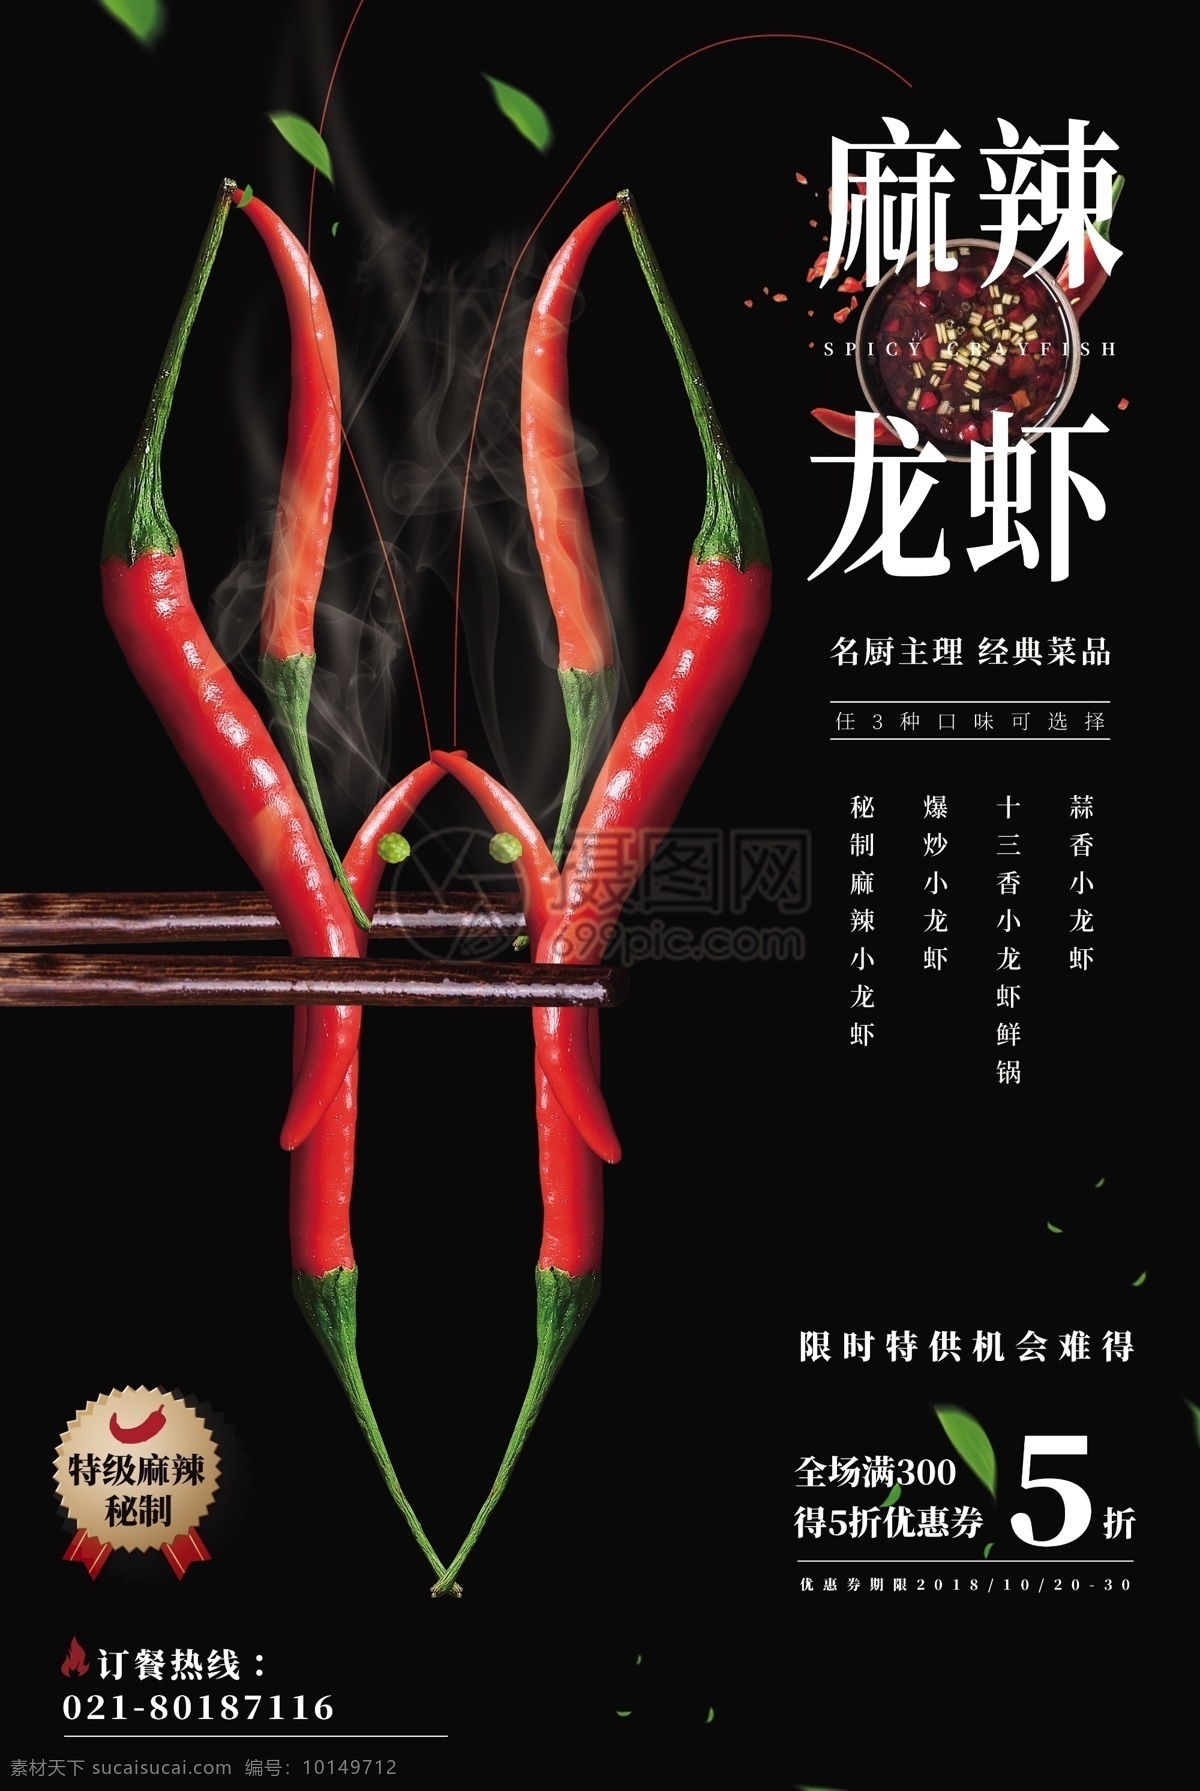 麻辣 小 龙虾 促销 海报 小龙虾 经典菜品 限时特供 美食海报 小龙虾海报